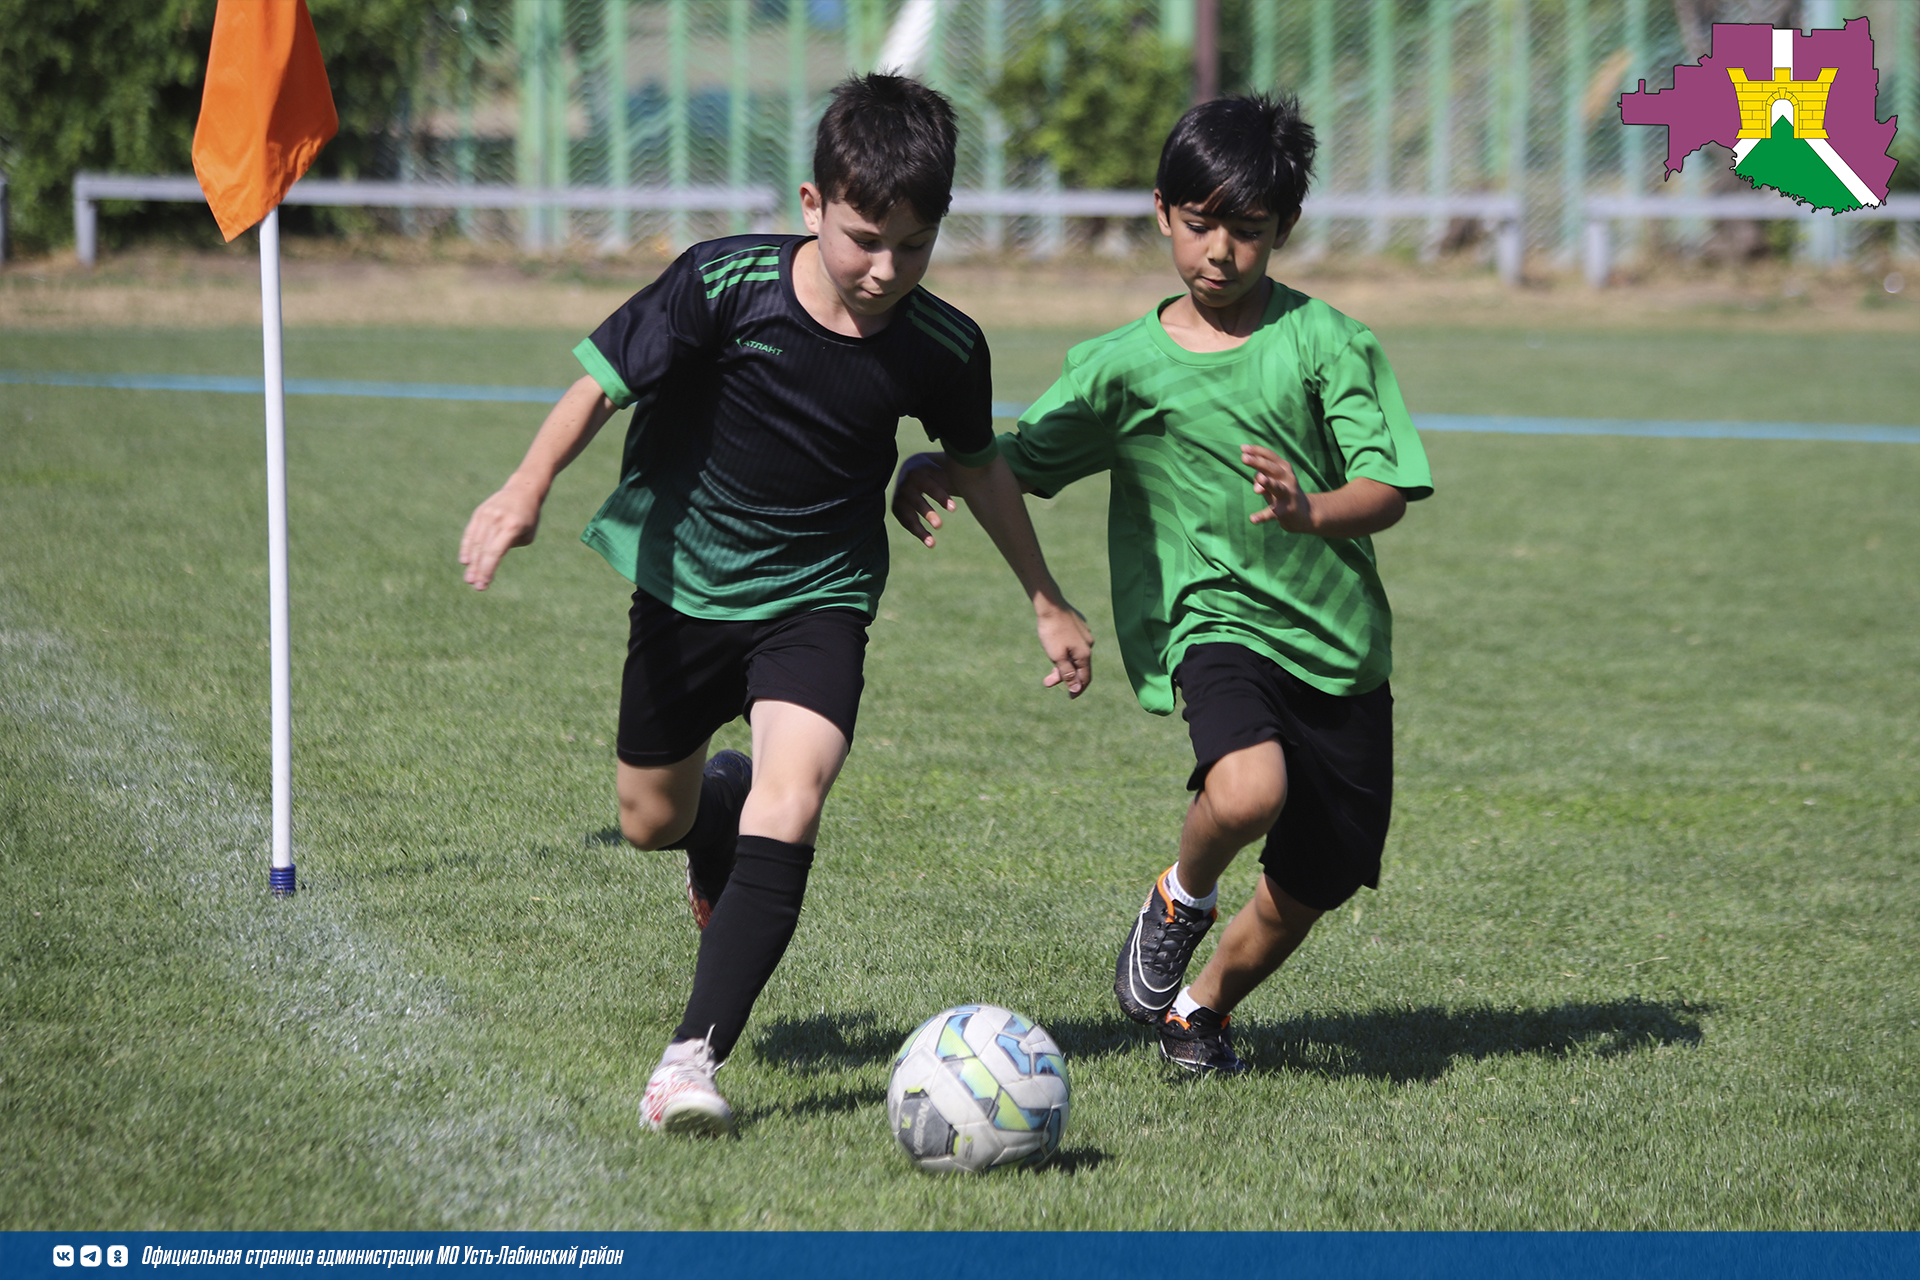  Завершился районный этап соревнований по футболу среди дворовых команд младшей возрастной группы